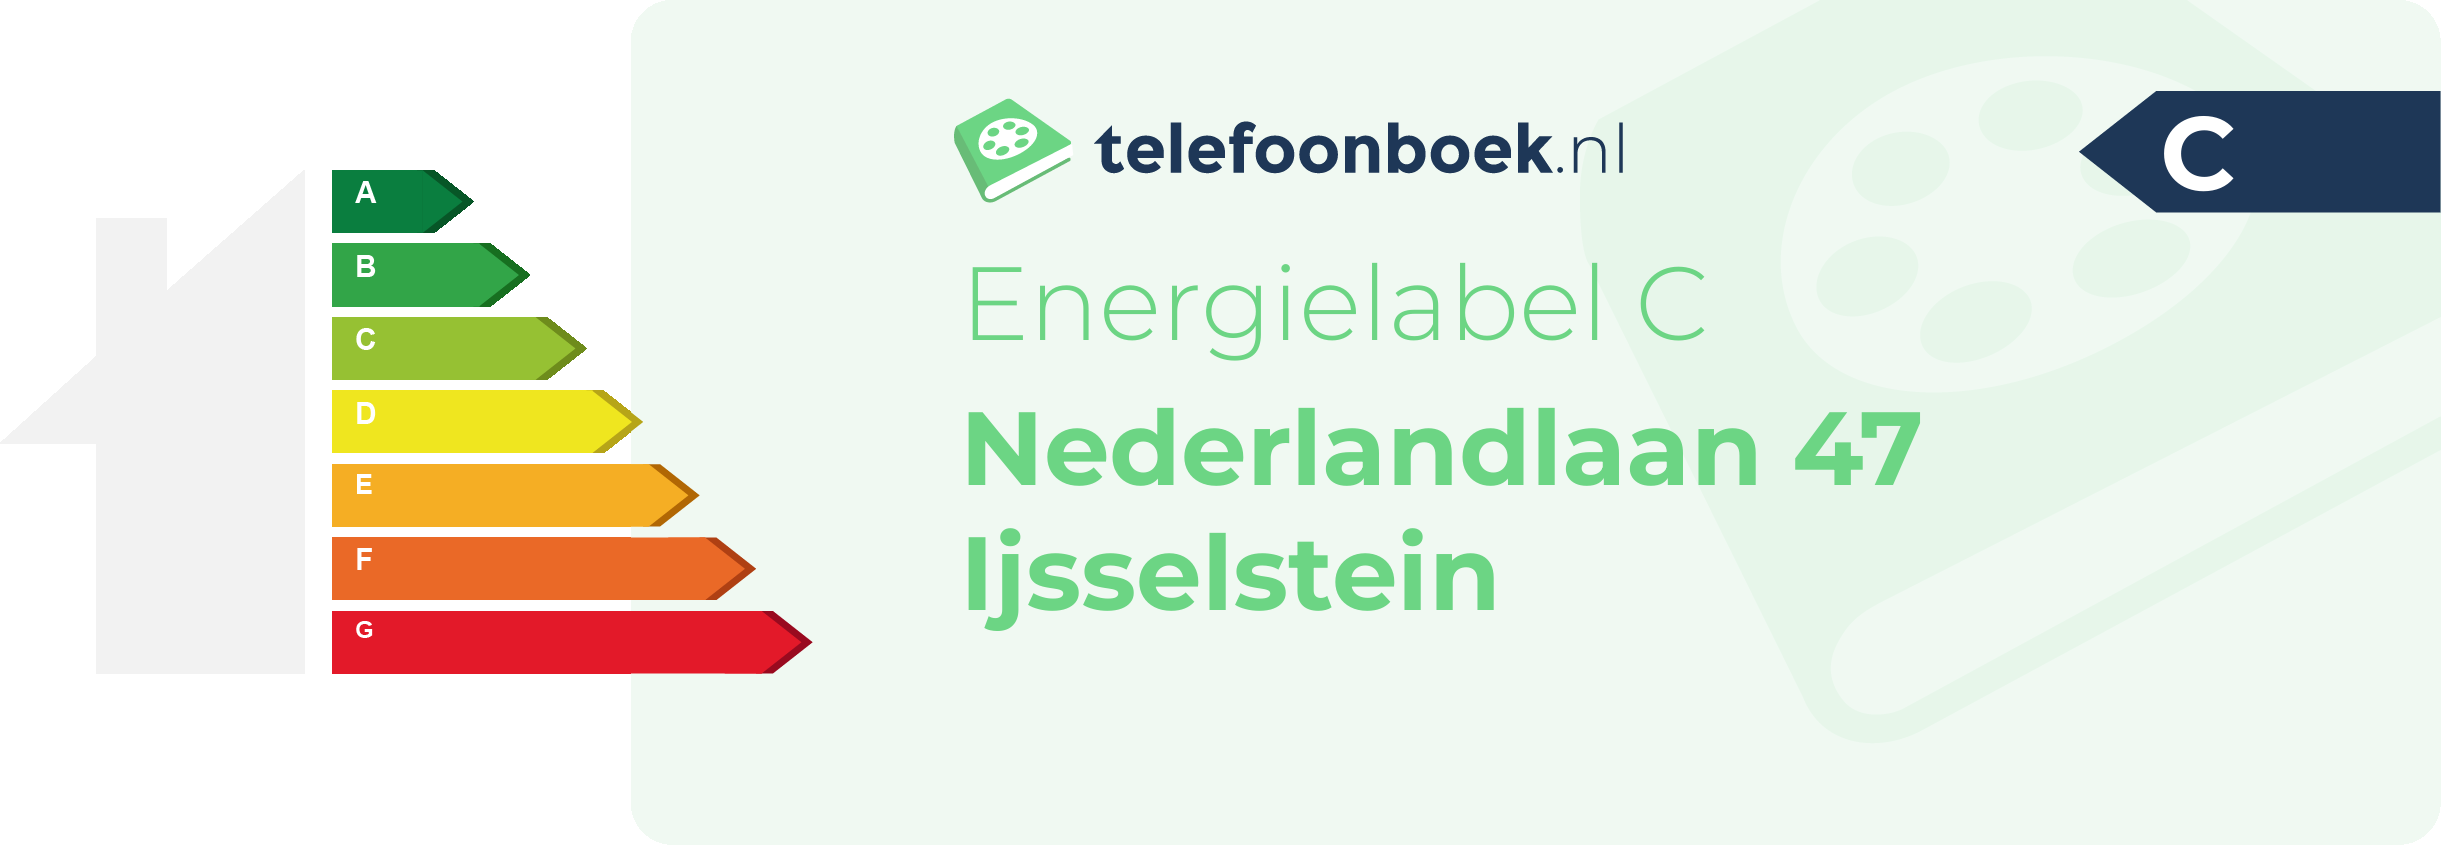 Energielabel Nederlandlaan 47 Ijsselstein